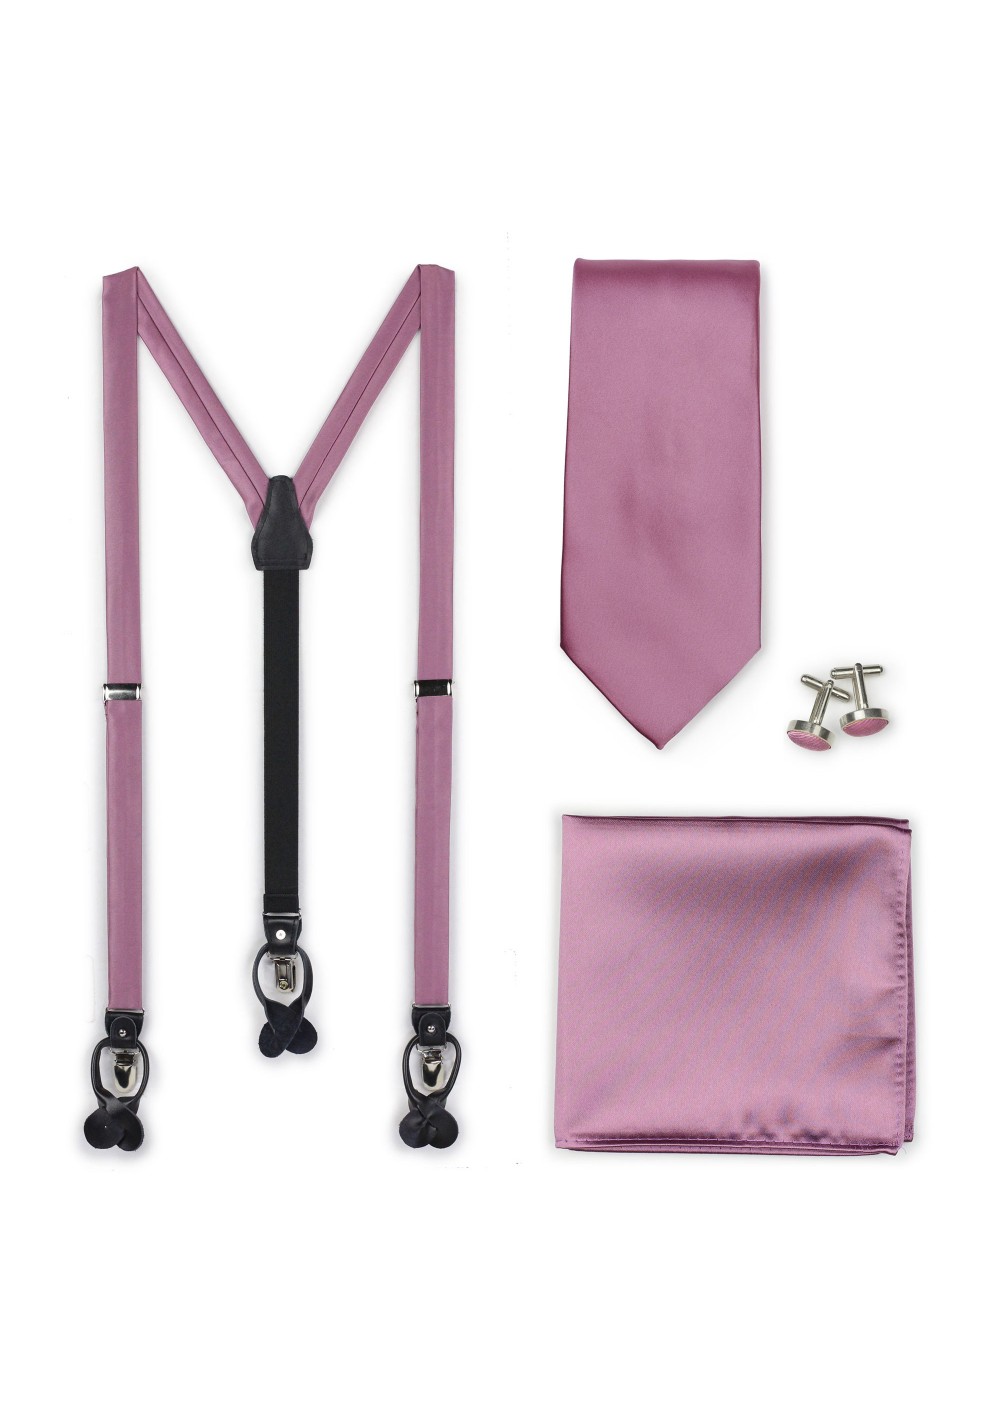 Wedding Suspender and Necktie Set in Rose